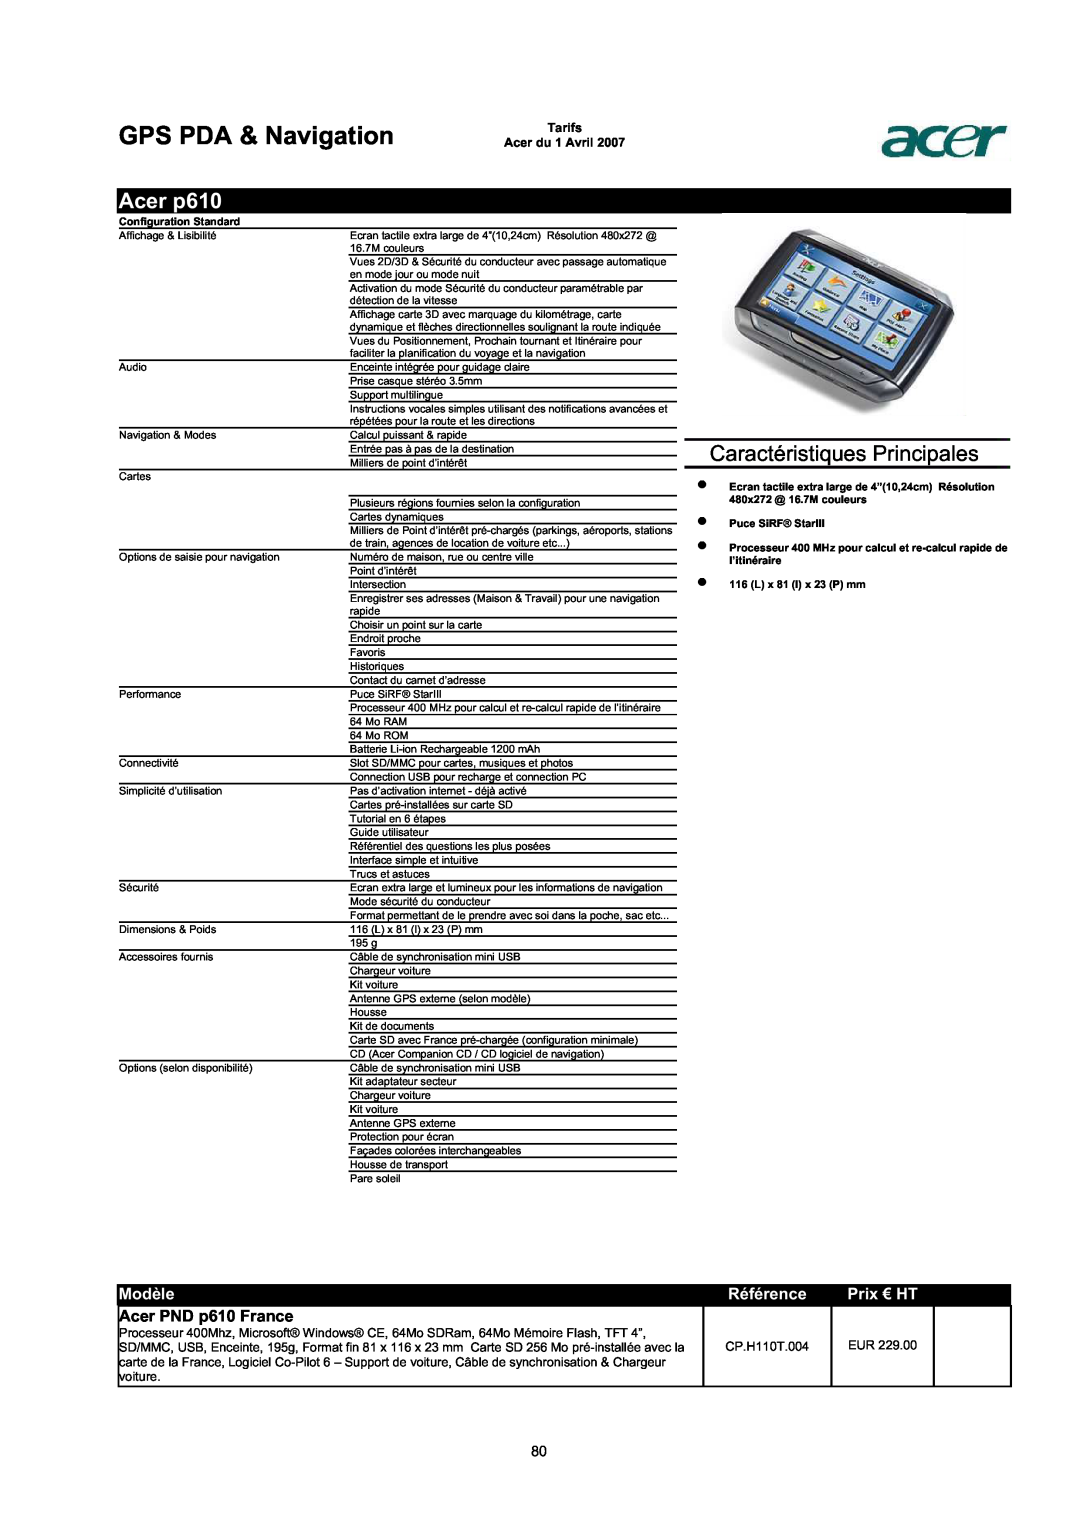 Acer AC713B-17 Acer p610, Acer PND p610 France, GPS PDA & Navigation, Caractéristiques Principales, Modèle, Référence 